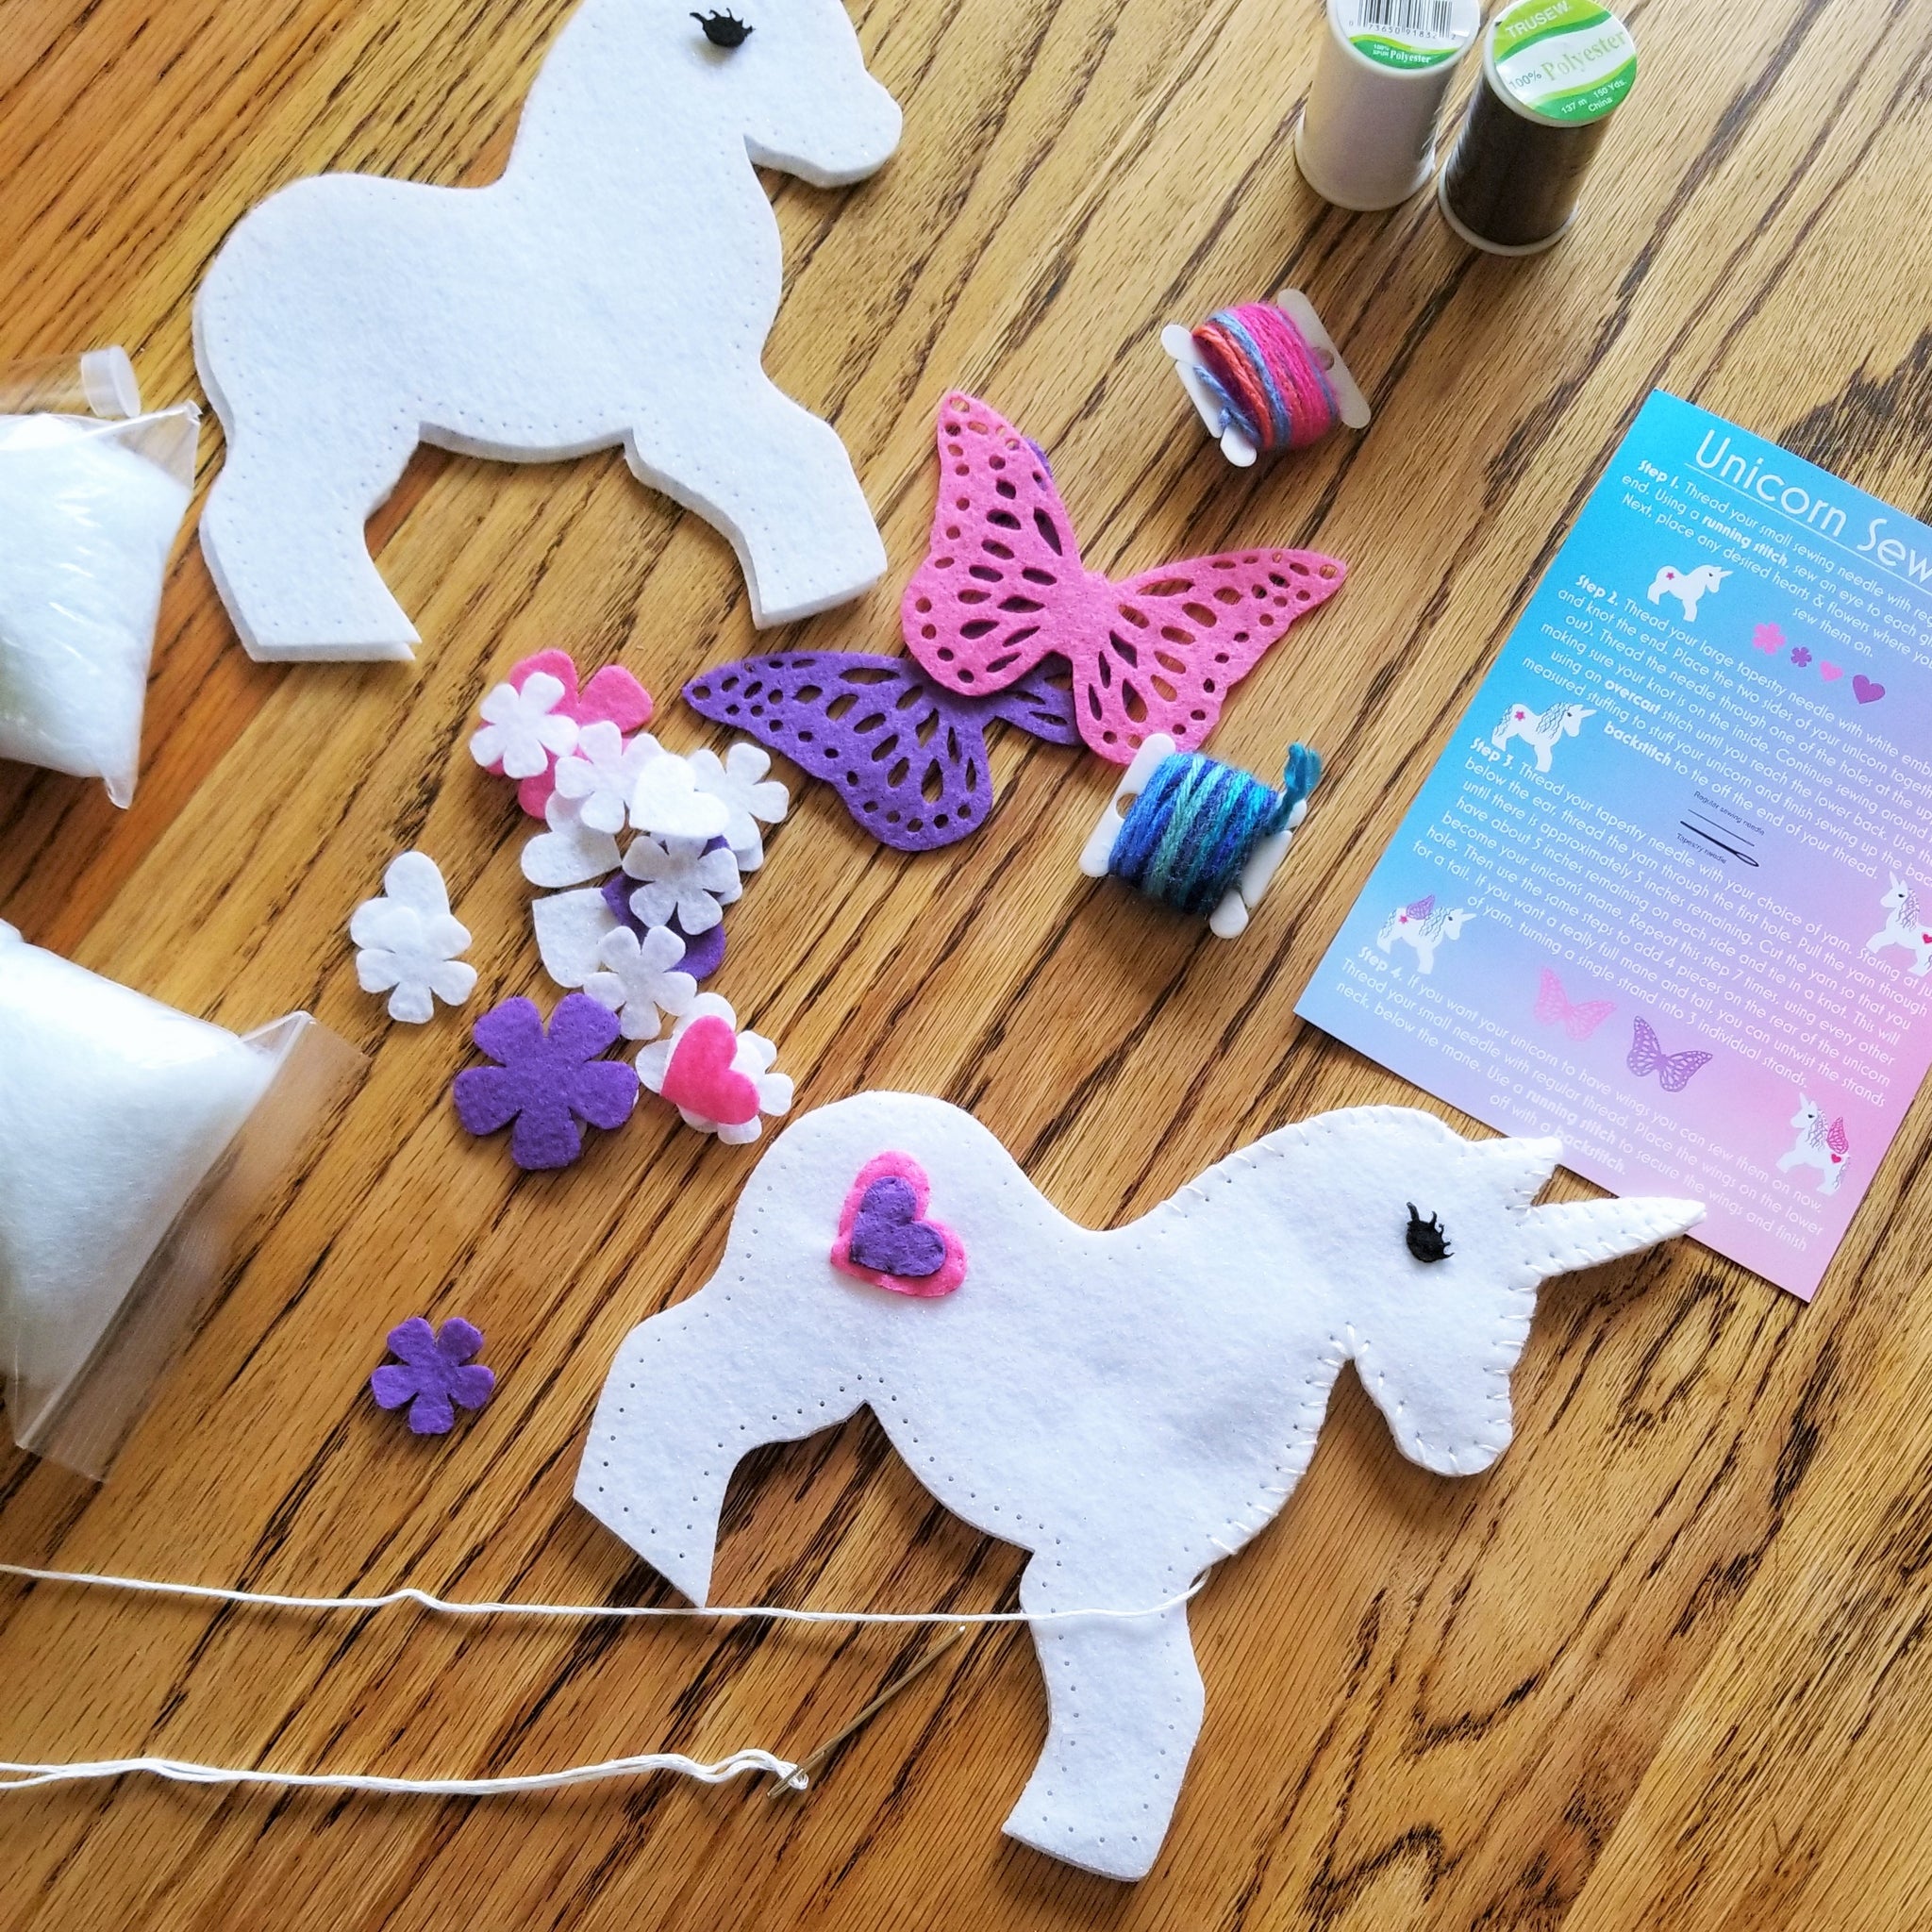 Wildflower Toys Wildflower Toys Unicorn Sewing Kit For Girls - Felt Craft  Kit For Beginners - Makes 2 Glitter White Felt Stuffed Unicorns  Art_Craft_Kit 